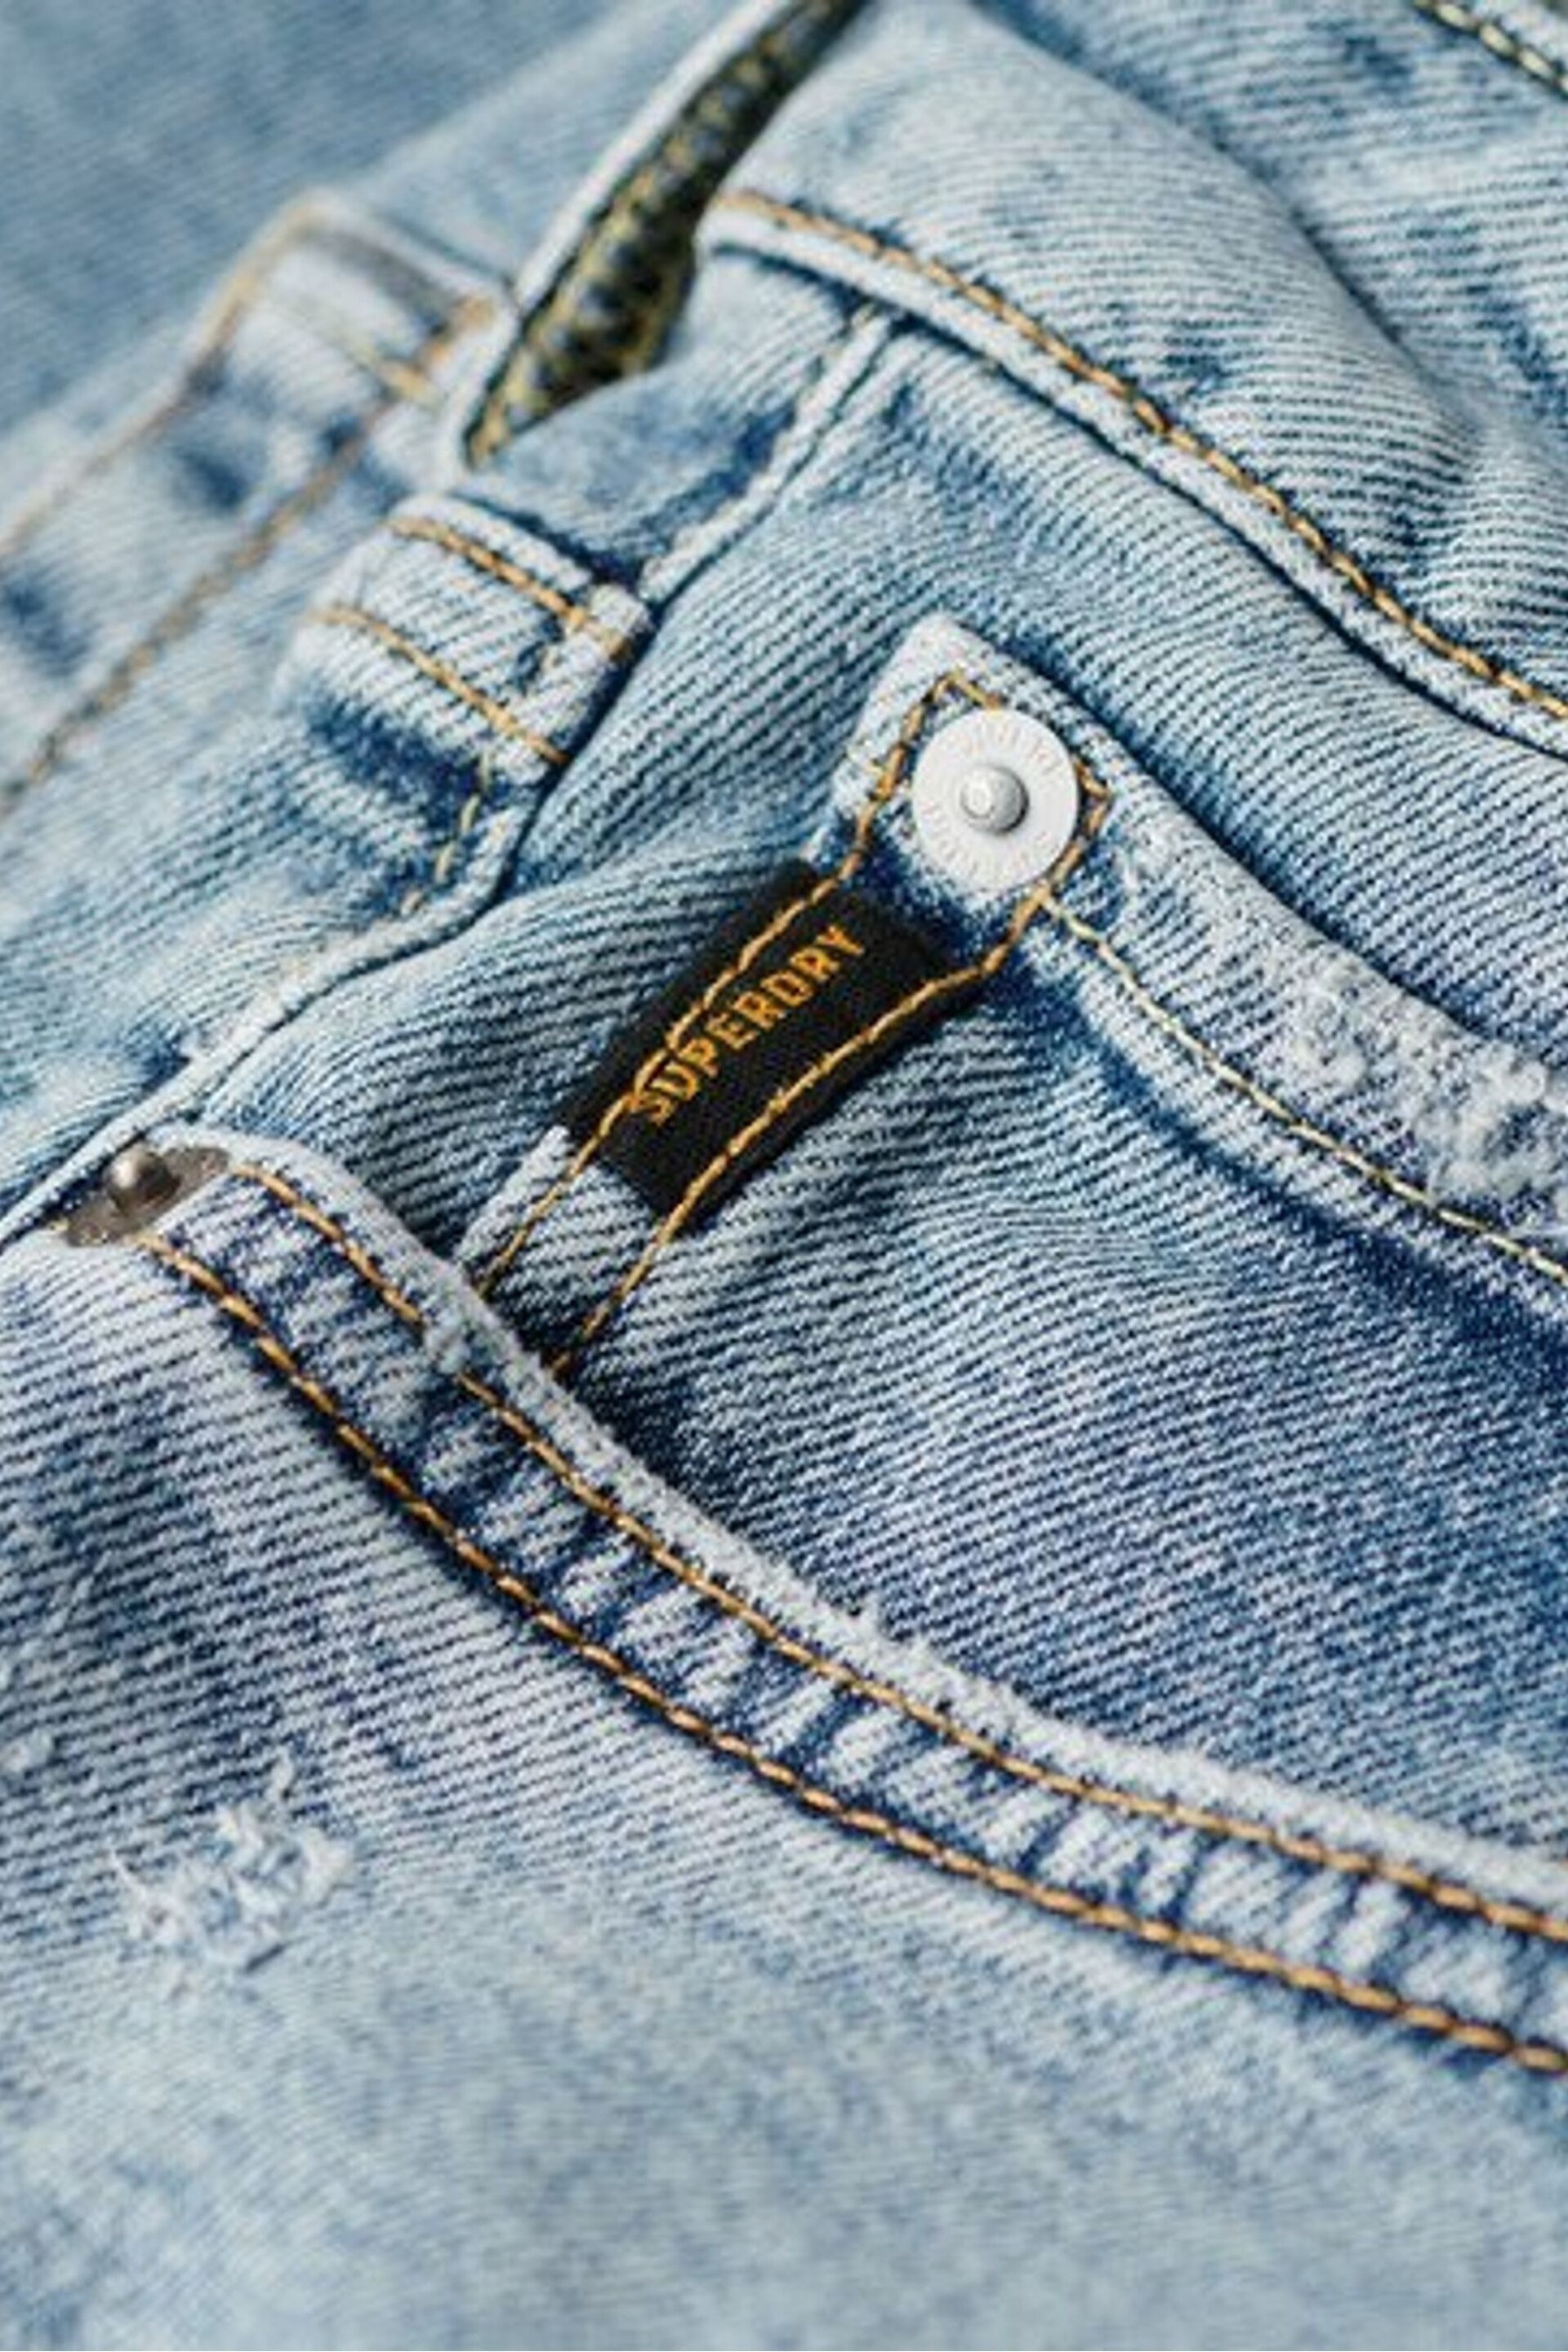 Superdry Blue Vintage Slim Jeans - Image 5 of 6